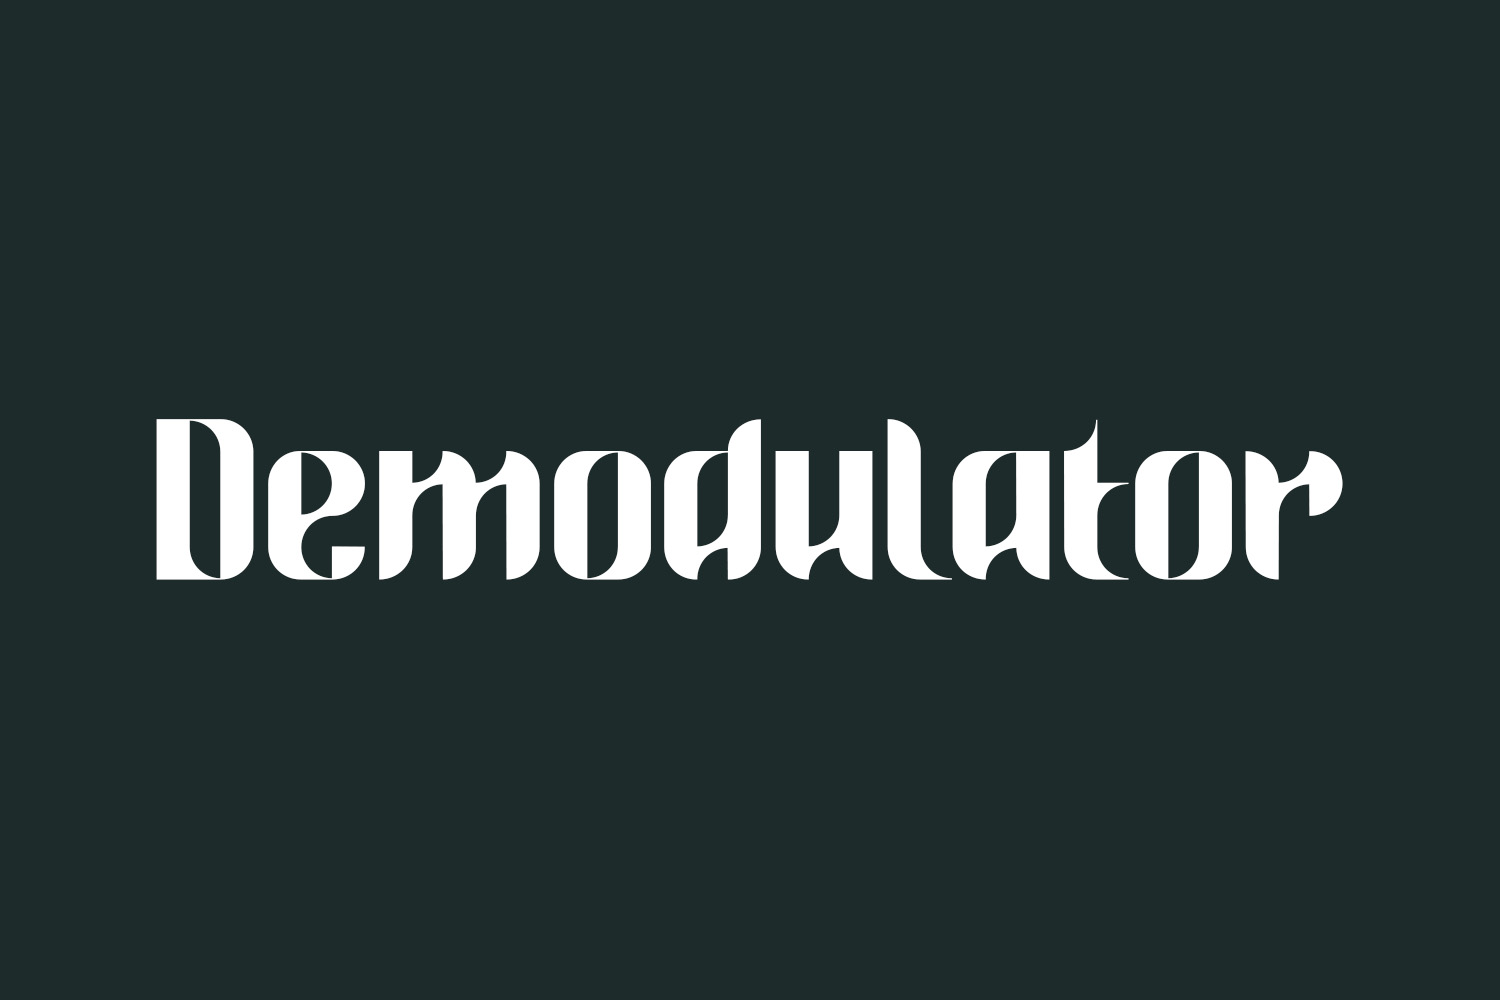 Demodulator Free Font